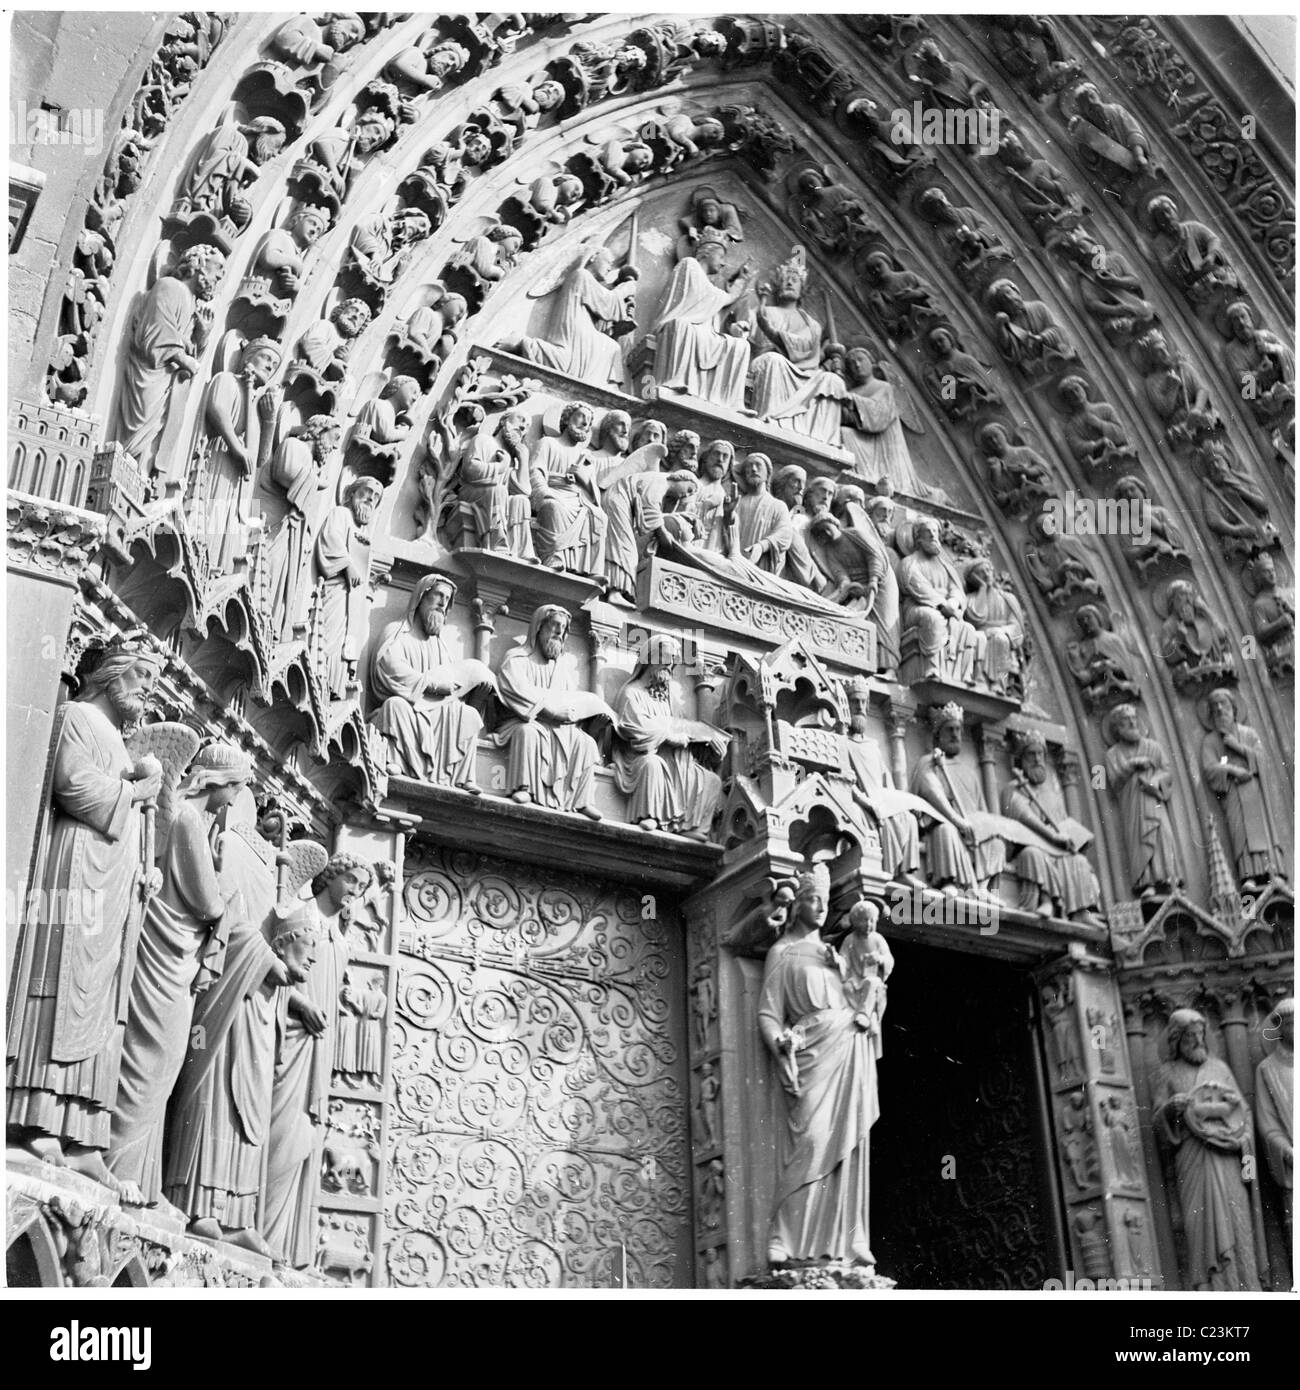 1950, París, Francia, Vista exterior de la obra decorativa de piedra de la catedral de Notre Dame, una famosa iglesia católica en la capital francesa. Foto de stock